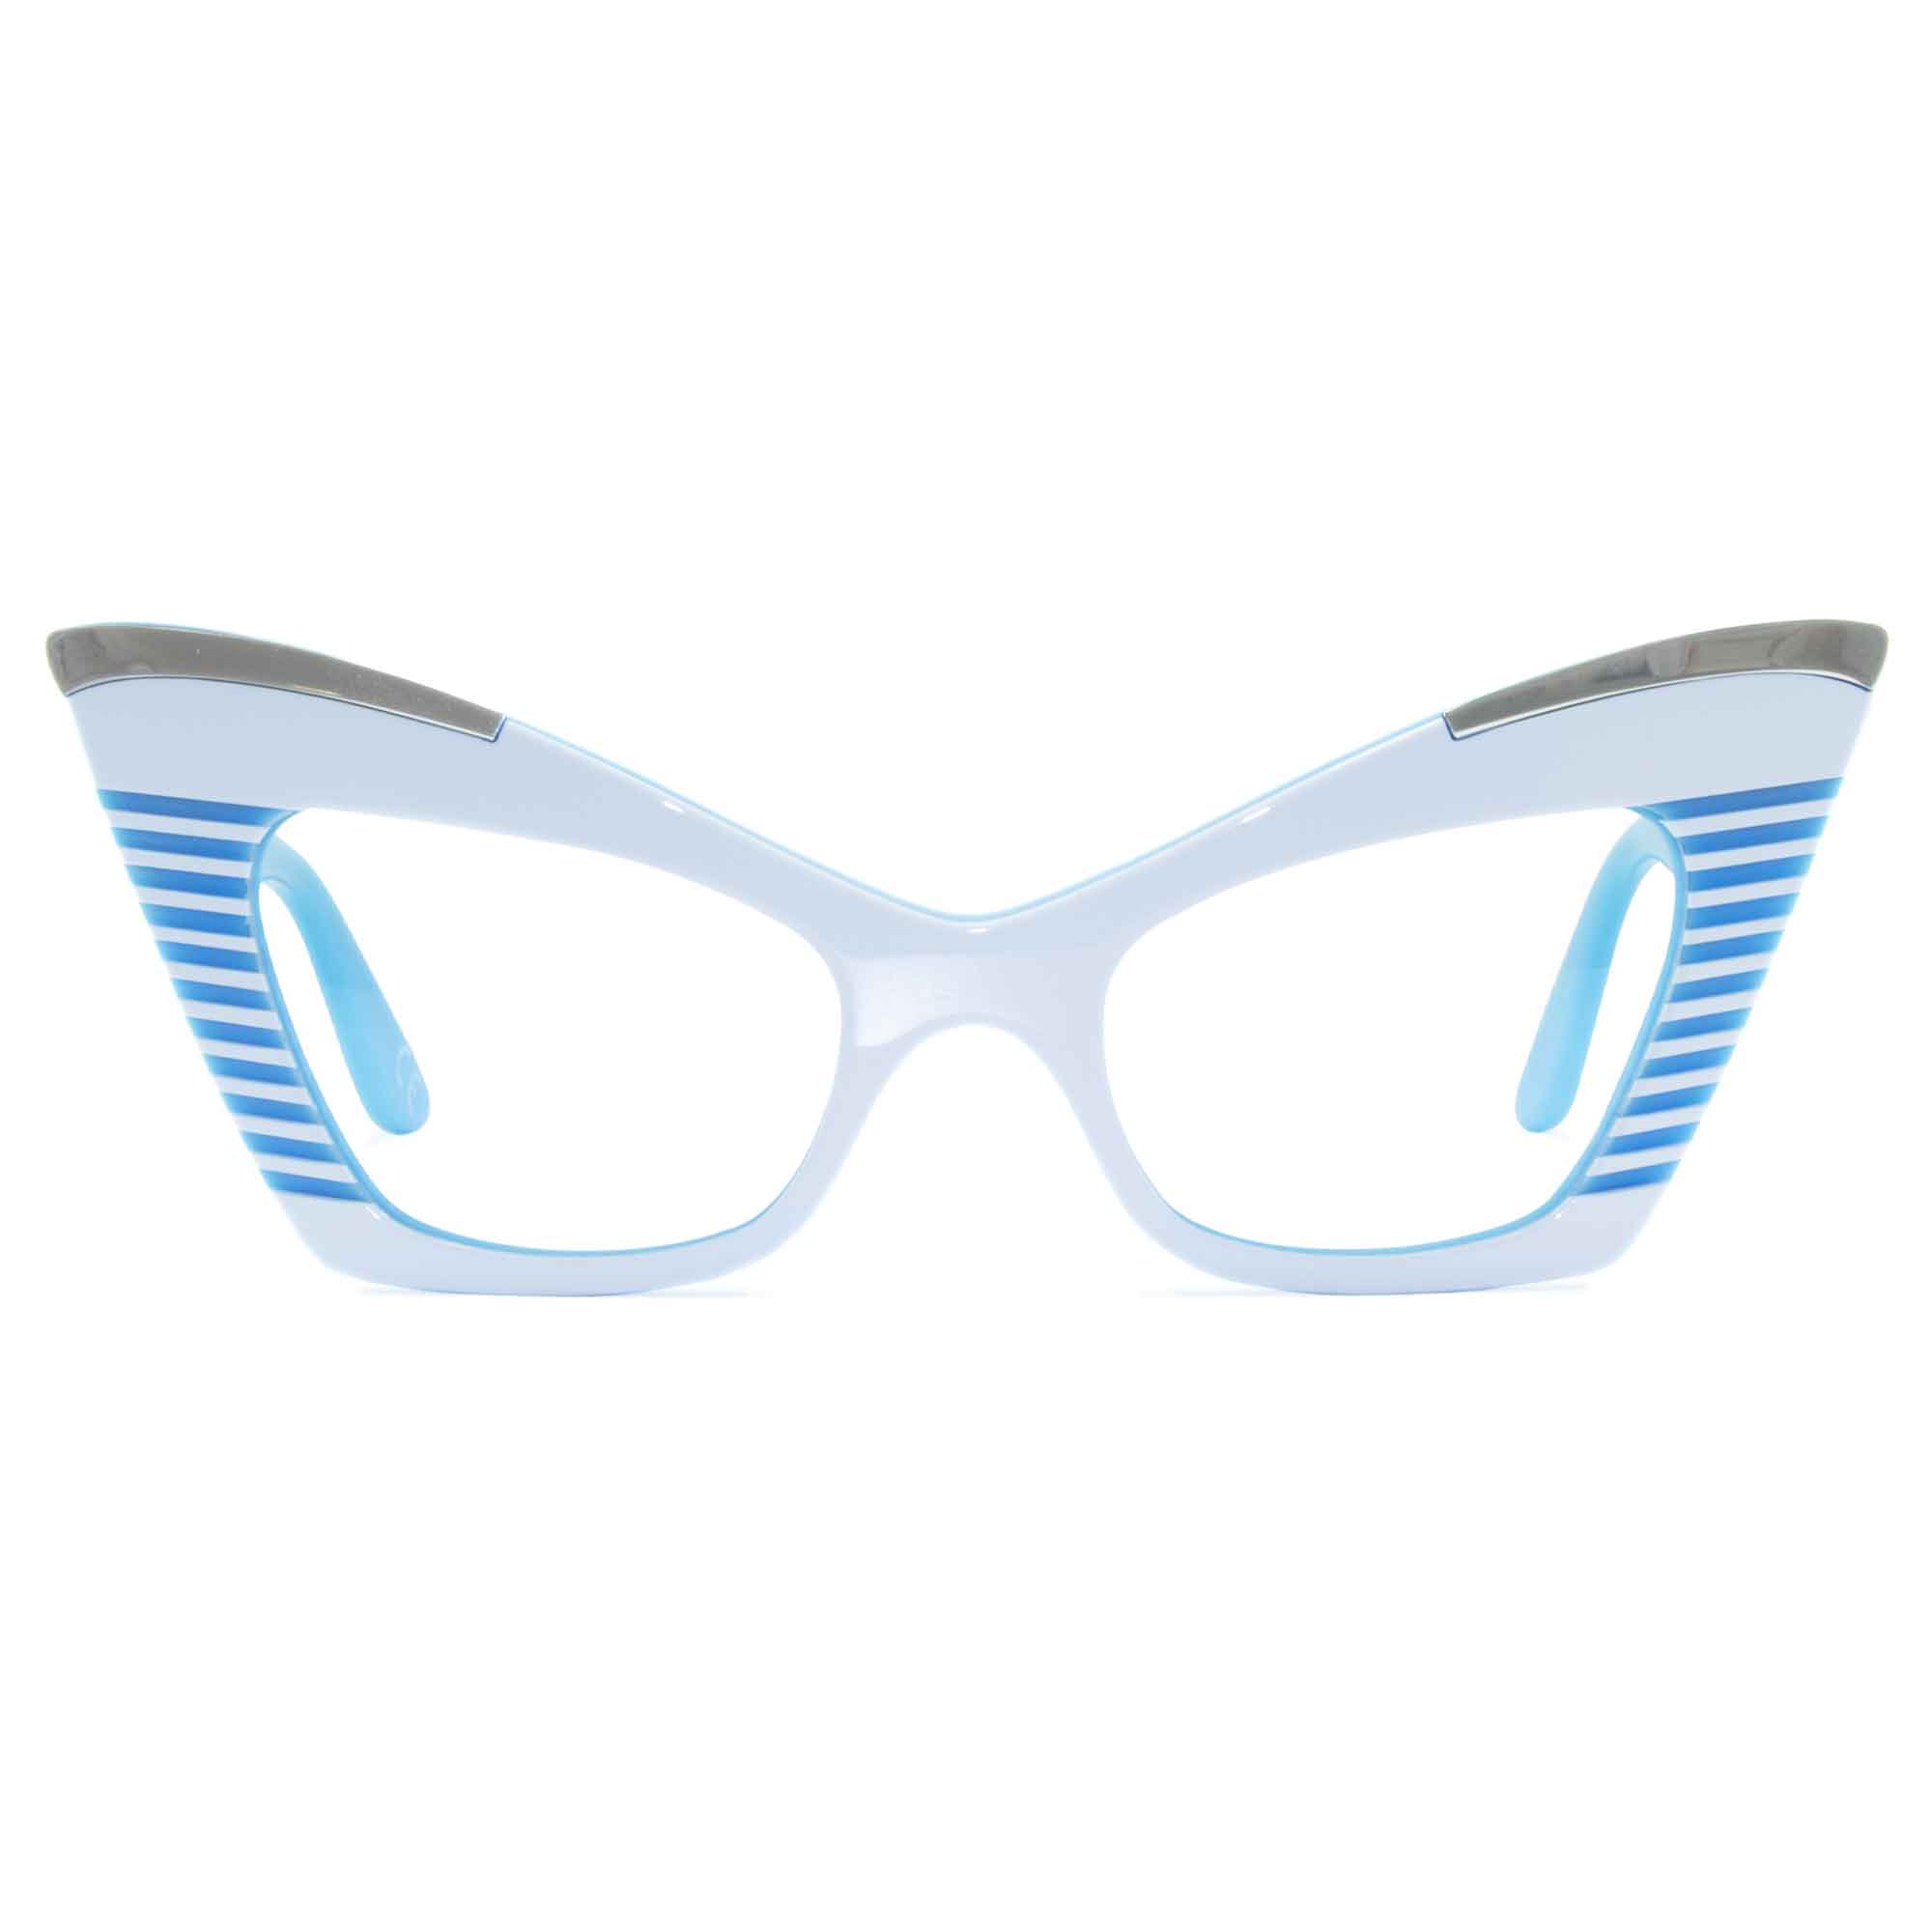 white & sky blue cat eye glasses